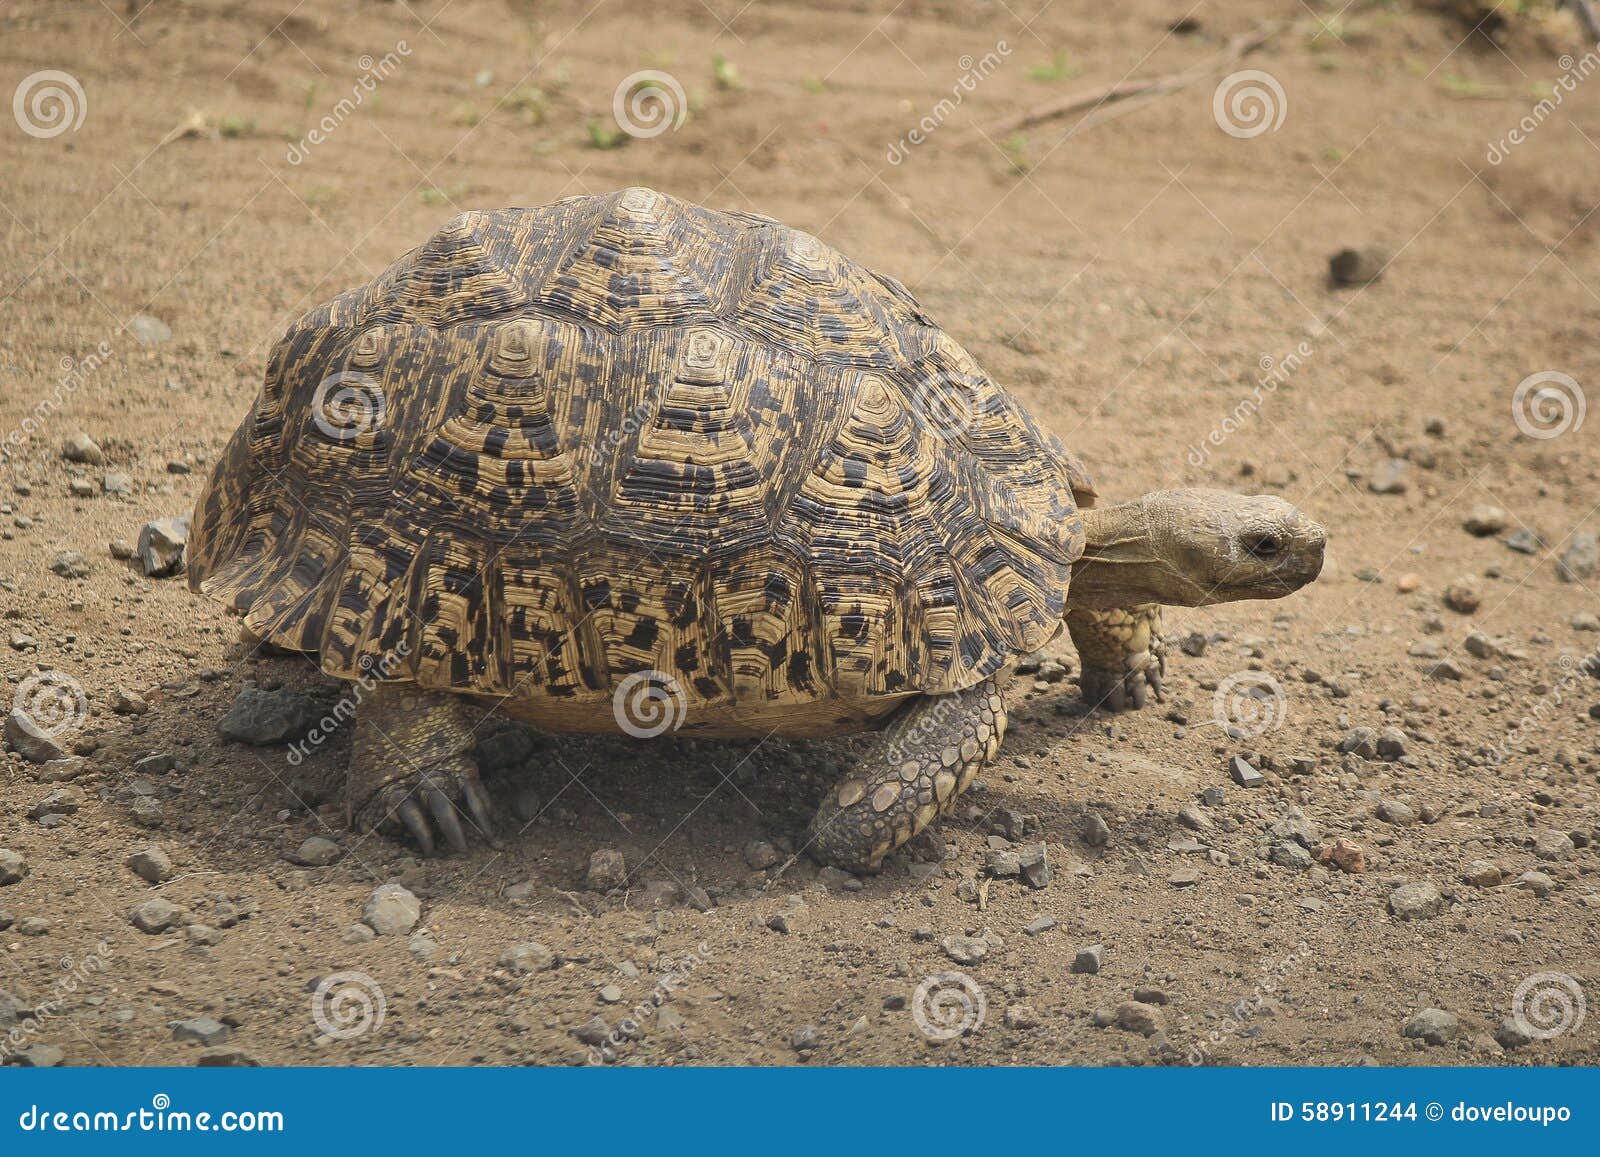 Angonoka Tortoise Facts